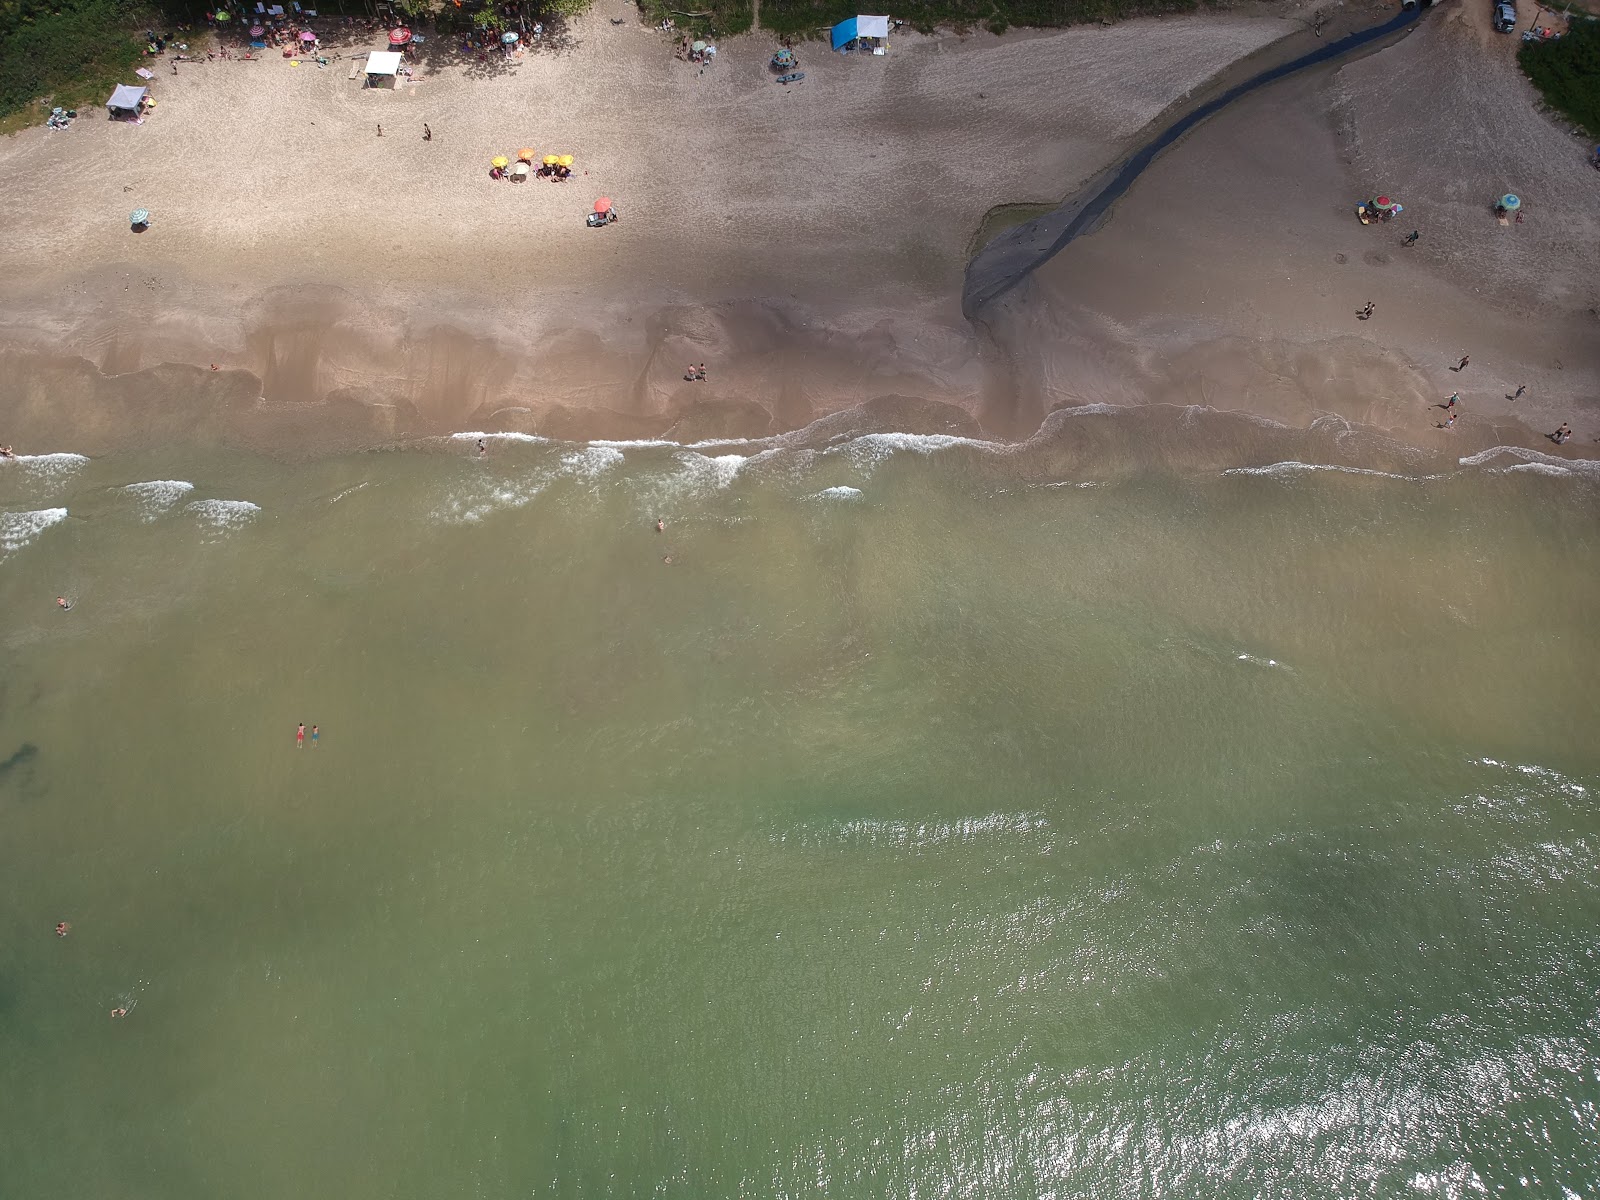 Foto af Praia De Sao Miguel - populært sted blandt afslapningskendere